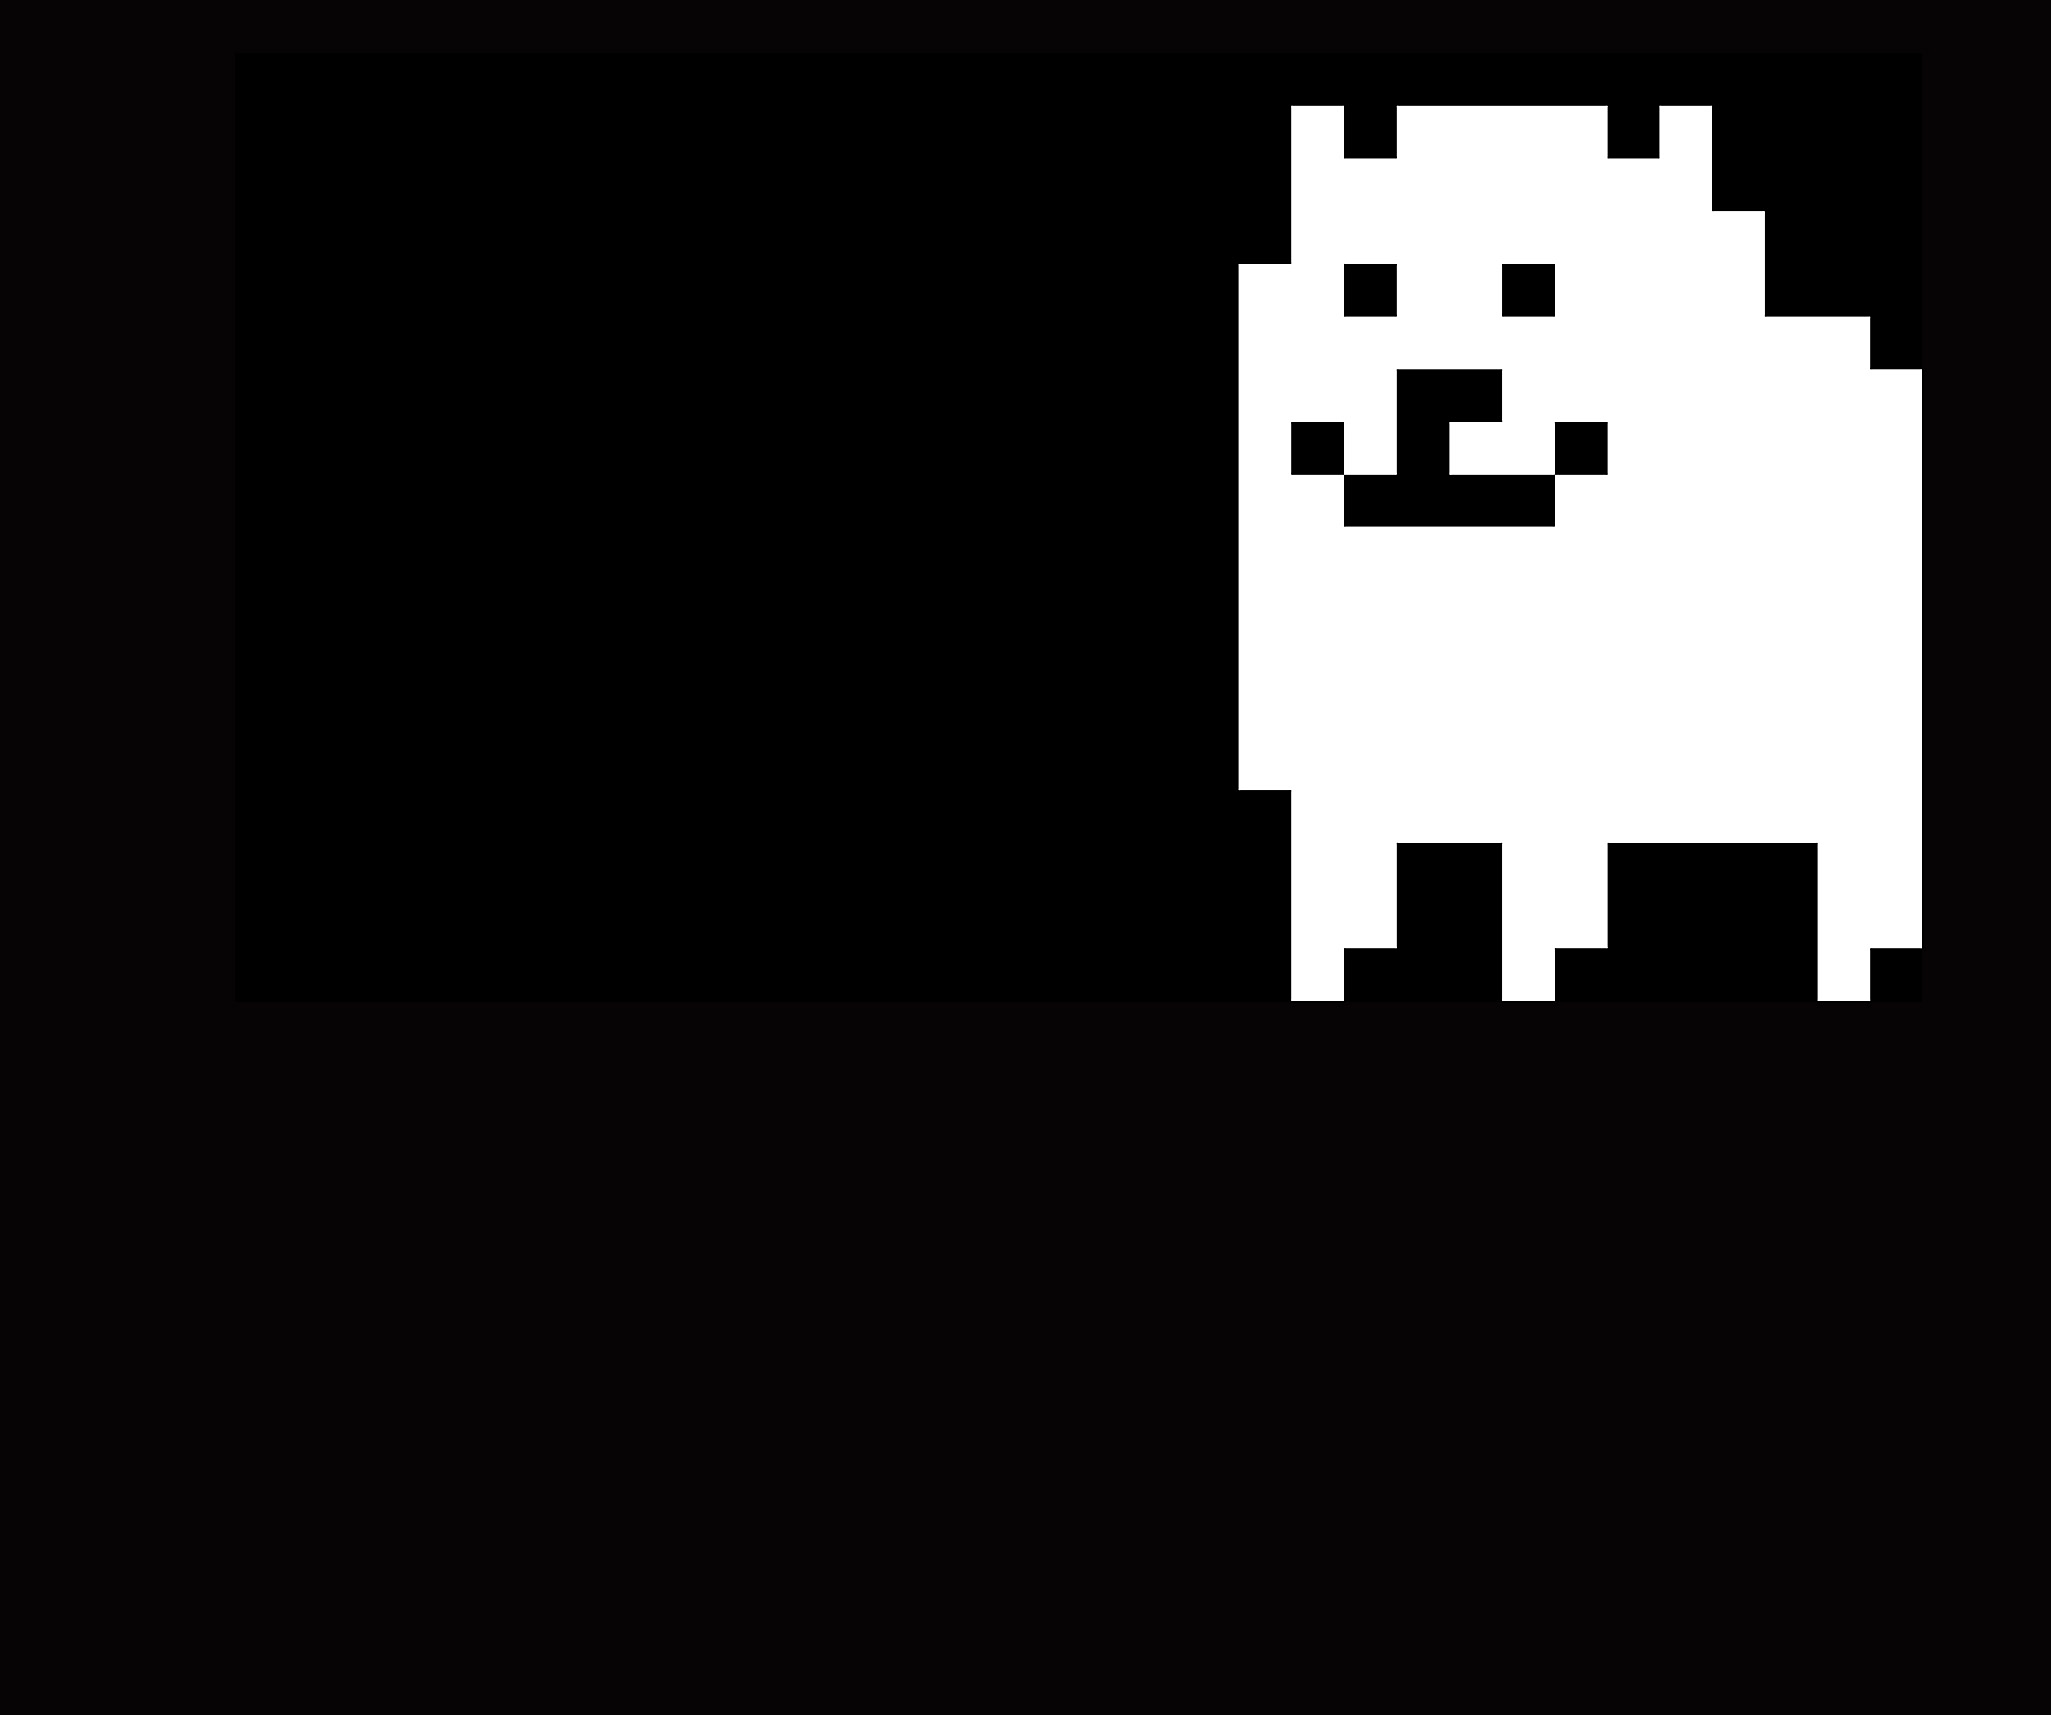 Undertale - Arte principal mostrando um cachorro pixelado